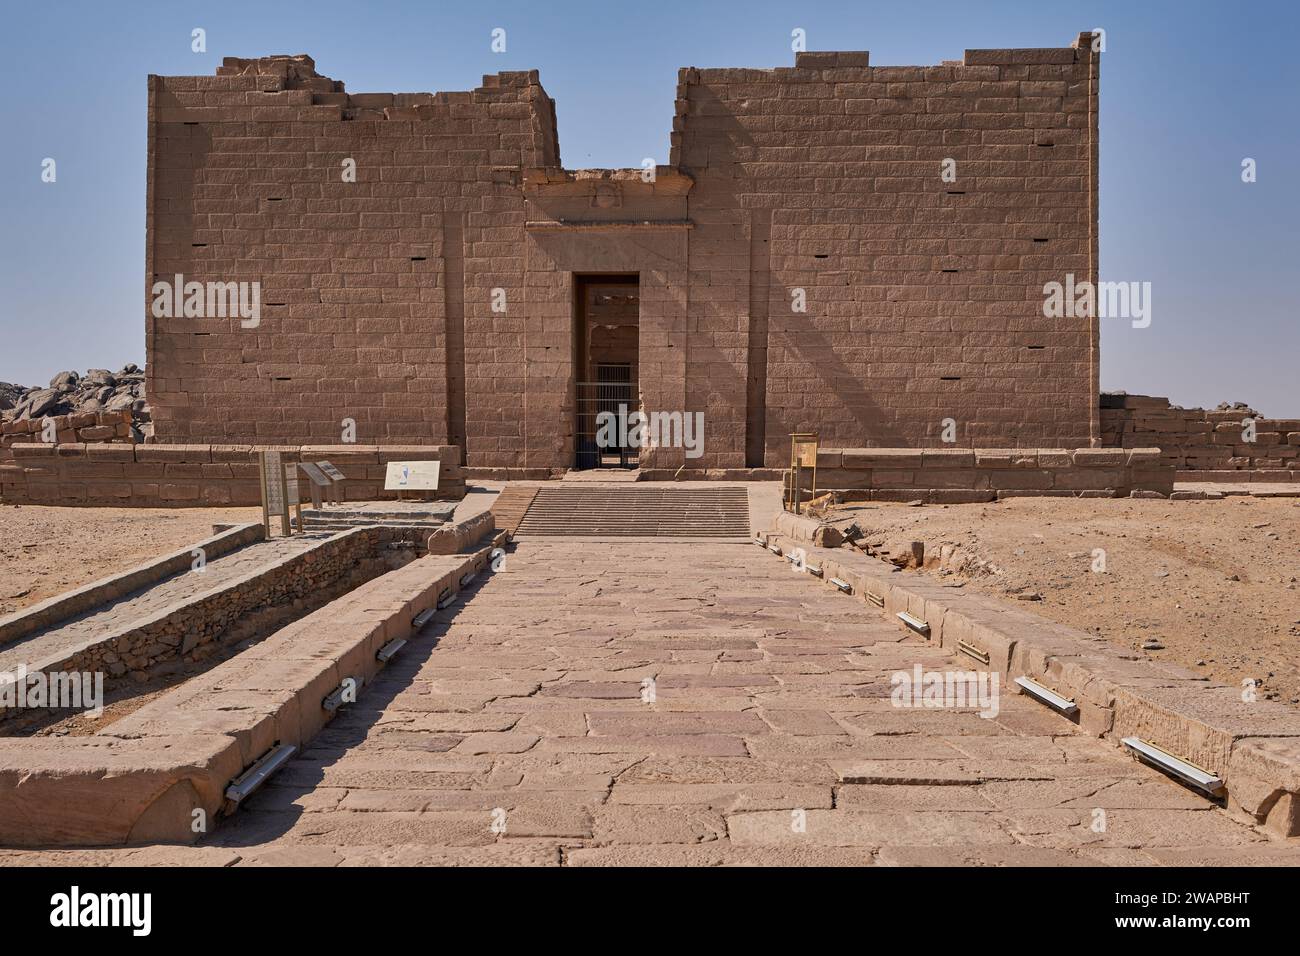 Tempio di Kalabsha ad Assuan, l'Egitto è un antico tempio egizio originariamente situato a Bab al-Kalabsha (porta di Kalabsha), 50 km a sud di Assuan Foto Stock